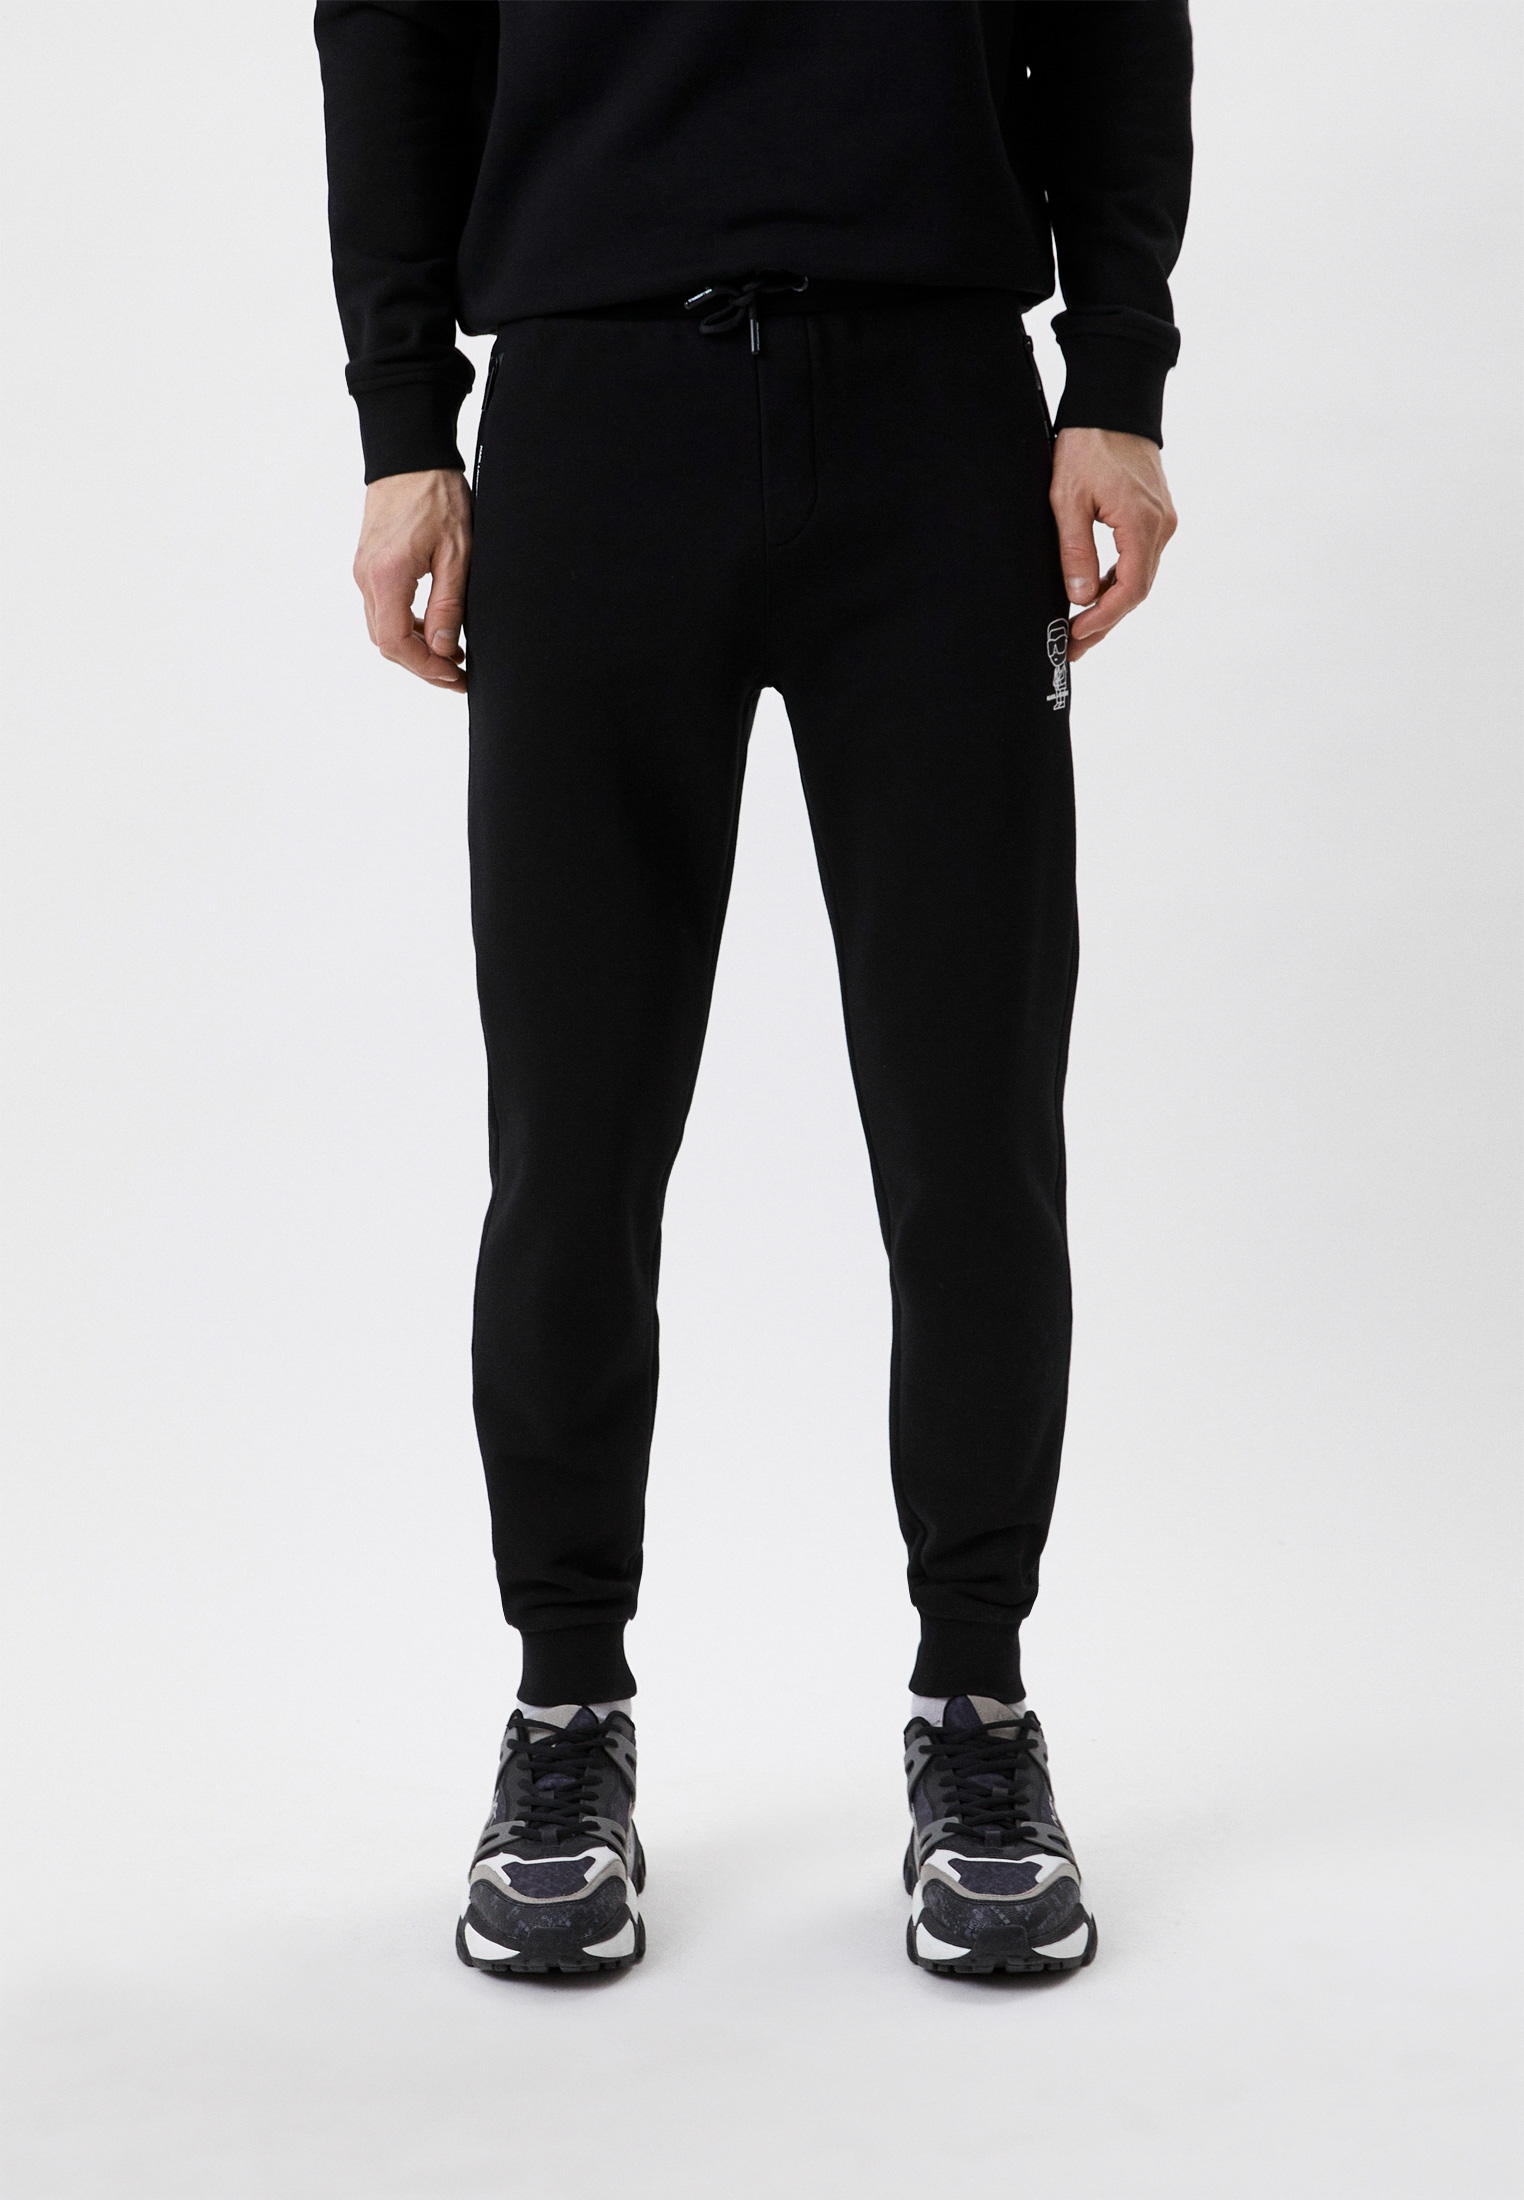 Мужские спортивные брюки Karl Lagerfeld (Карл Лагерфельд) 705093-531900: изображение 1